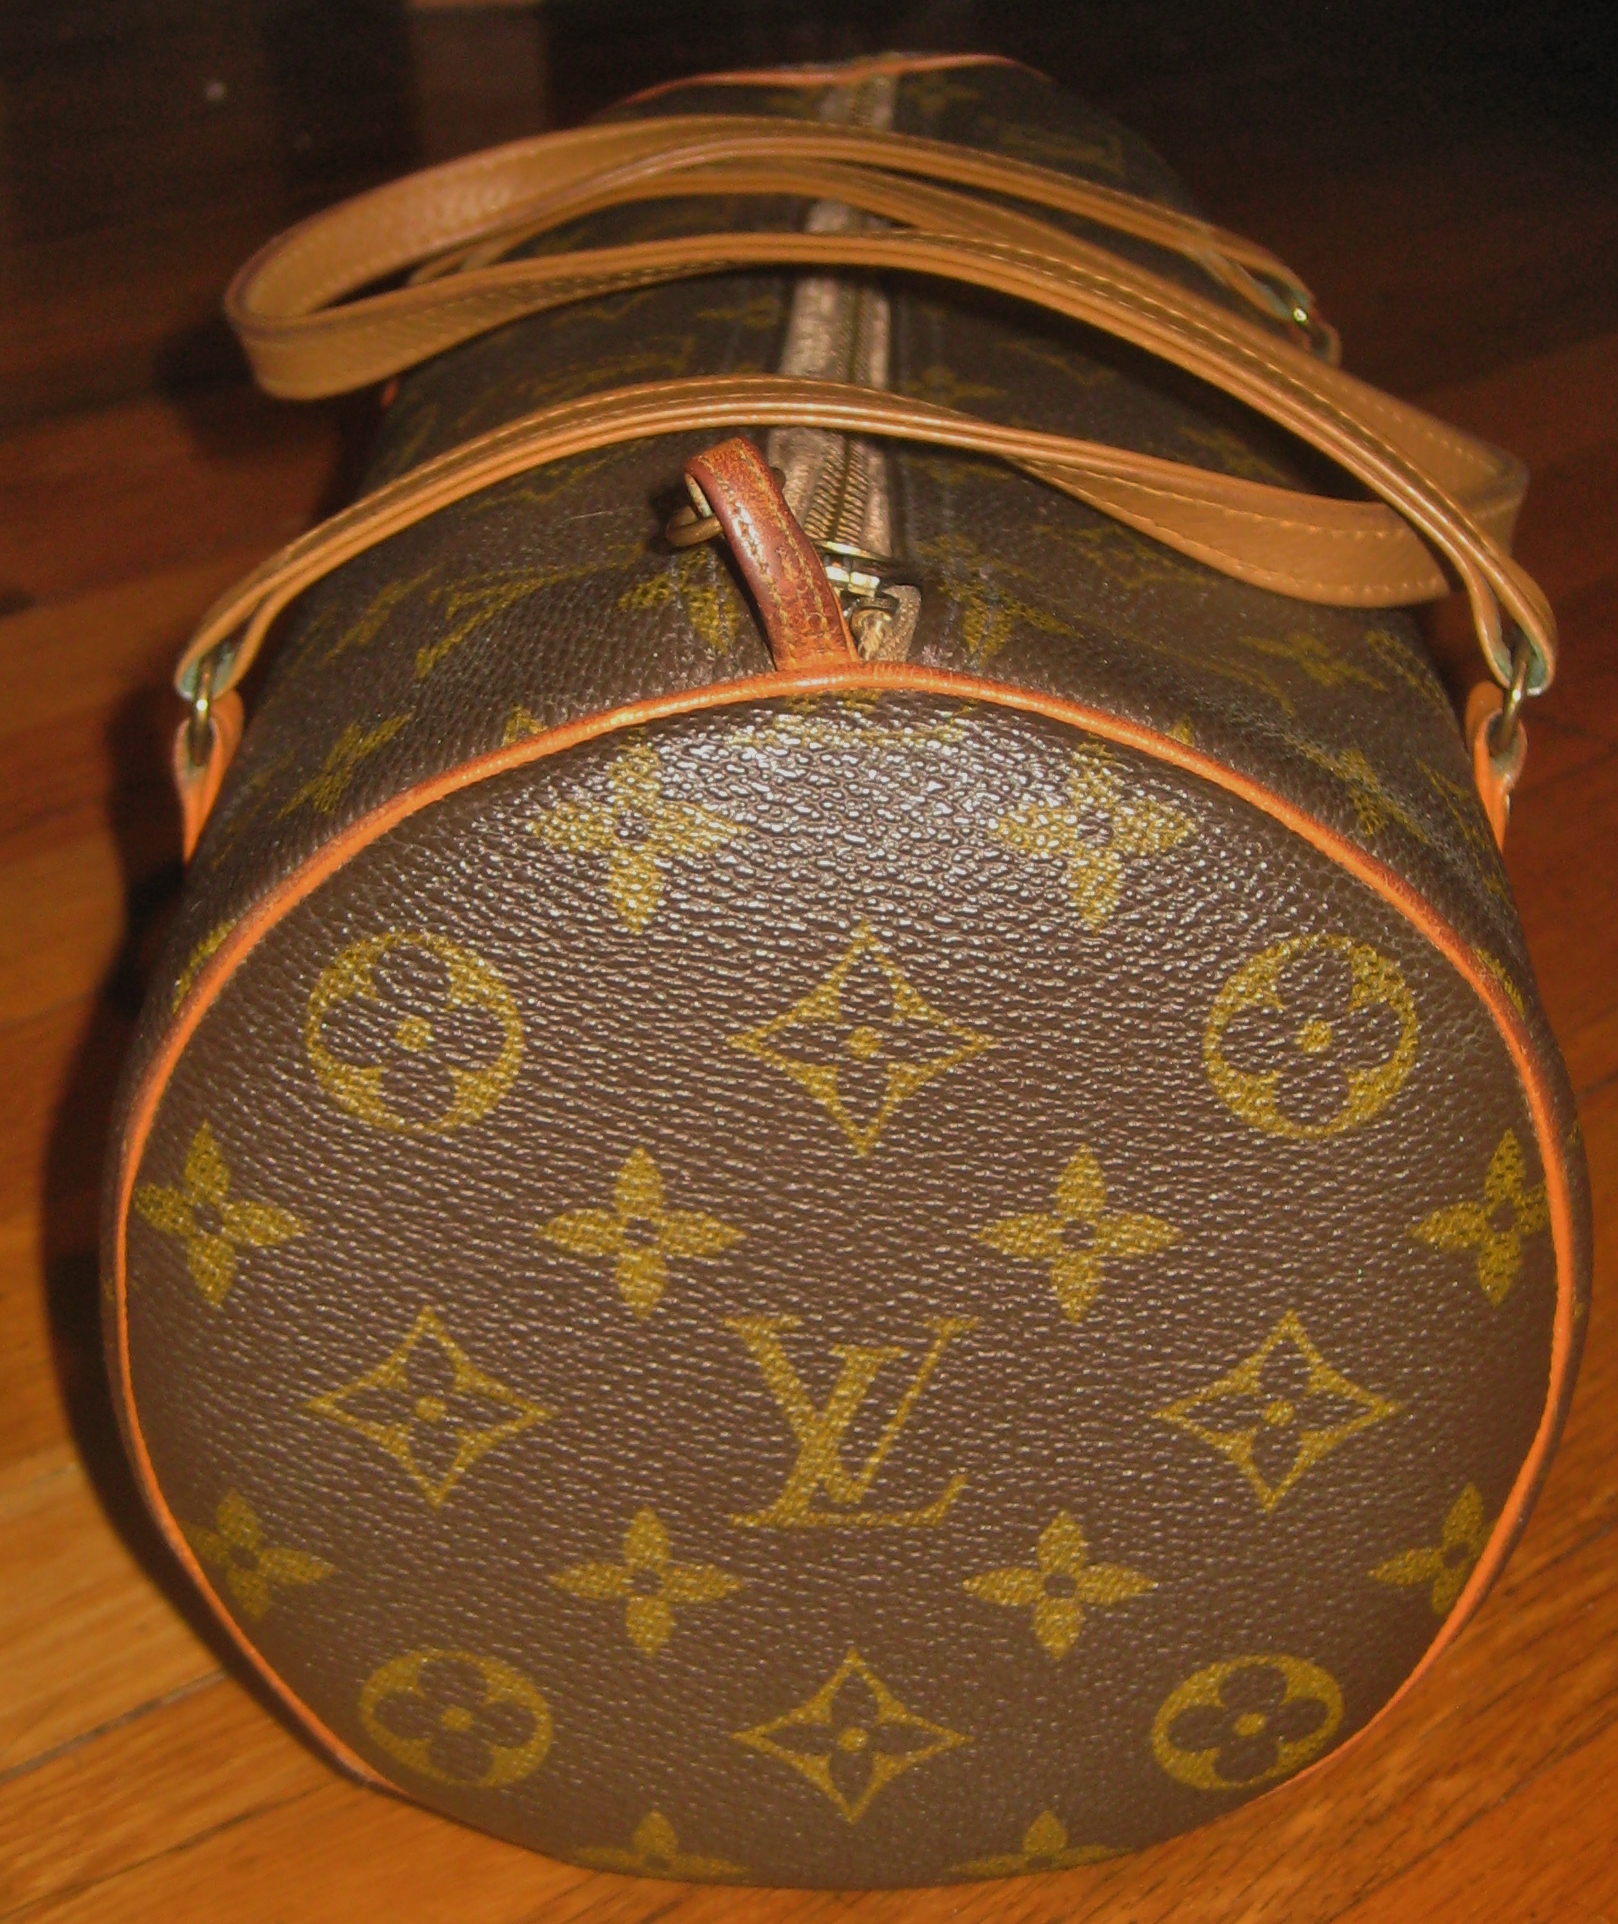 Best Auth Louis Vuitton Vintage Shoulder Bag talon On The Zipper